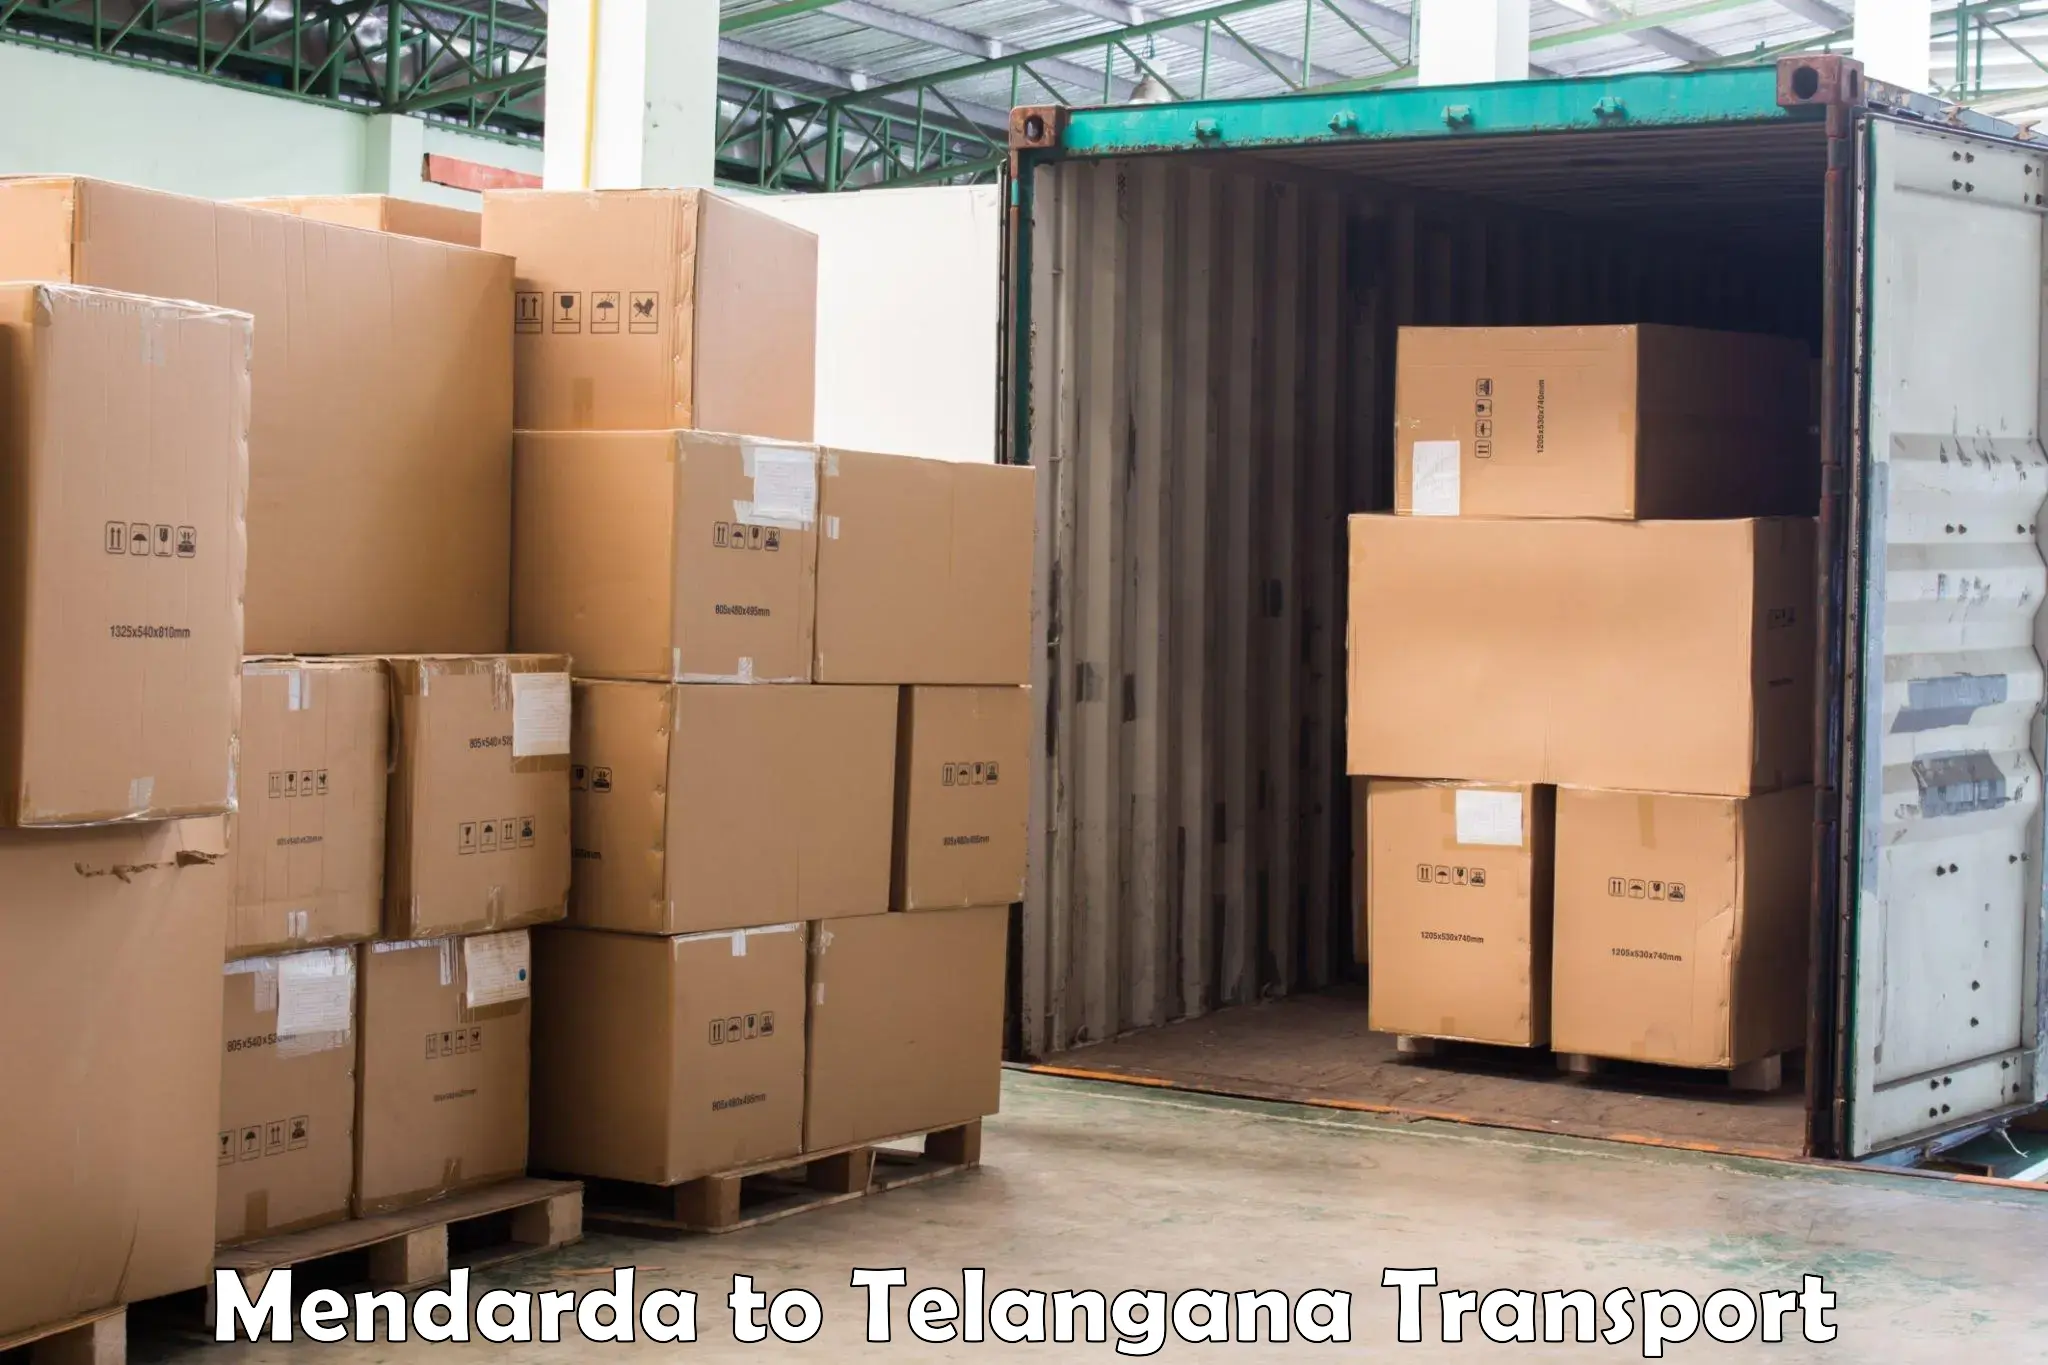 Furniture transport service Mendarda to Telangana